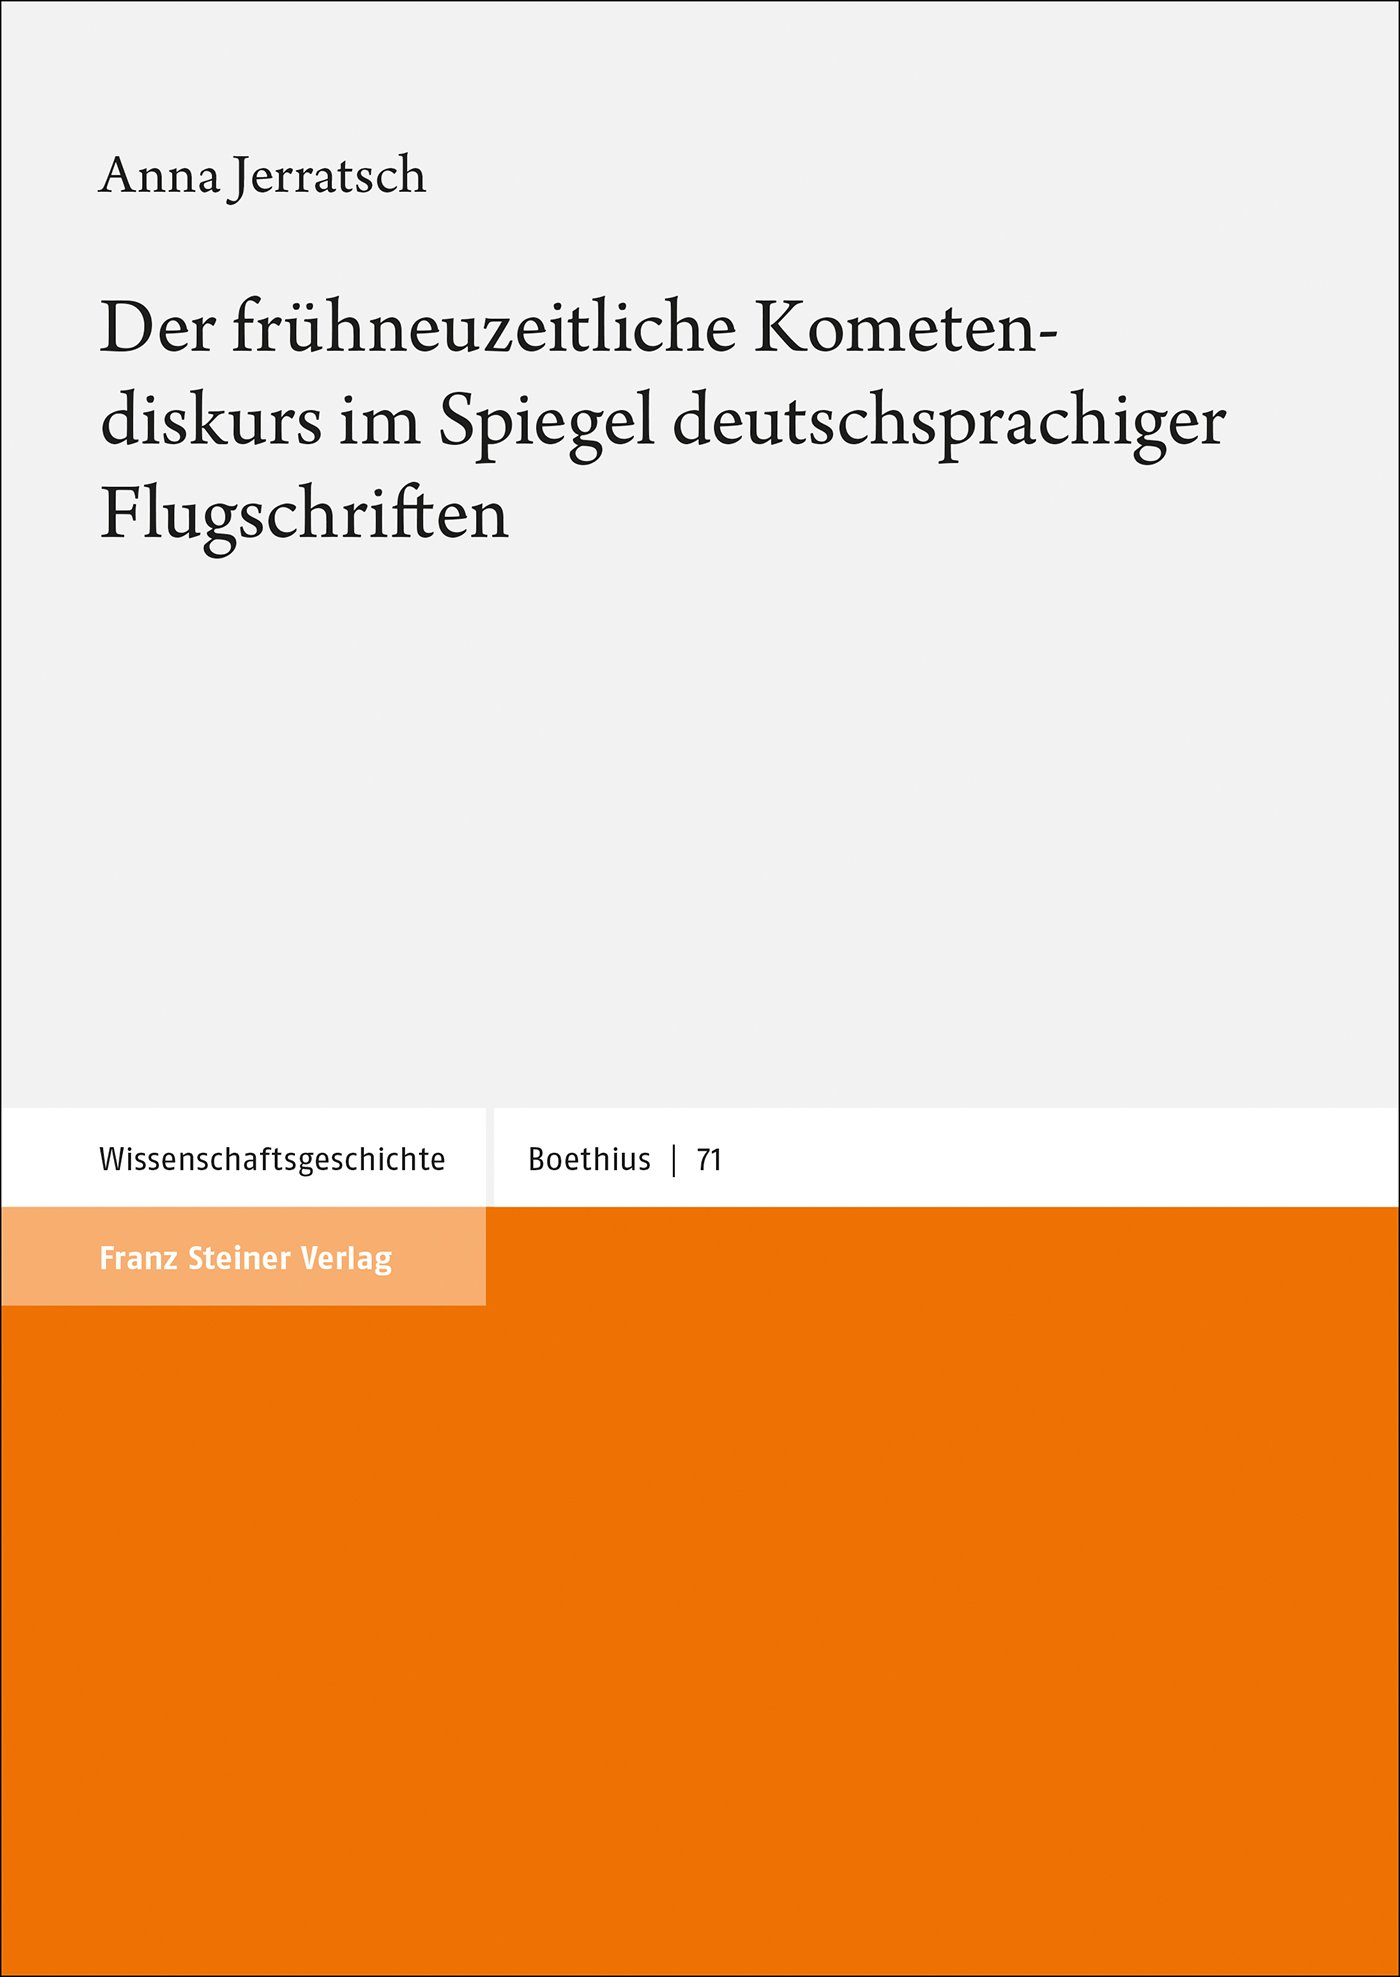 Der frühneuzeitliche Kometendiskurs im Spiegel deutschsprachiger Flugschriften